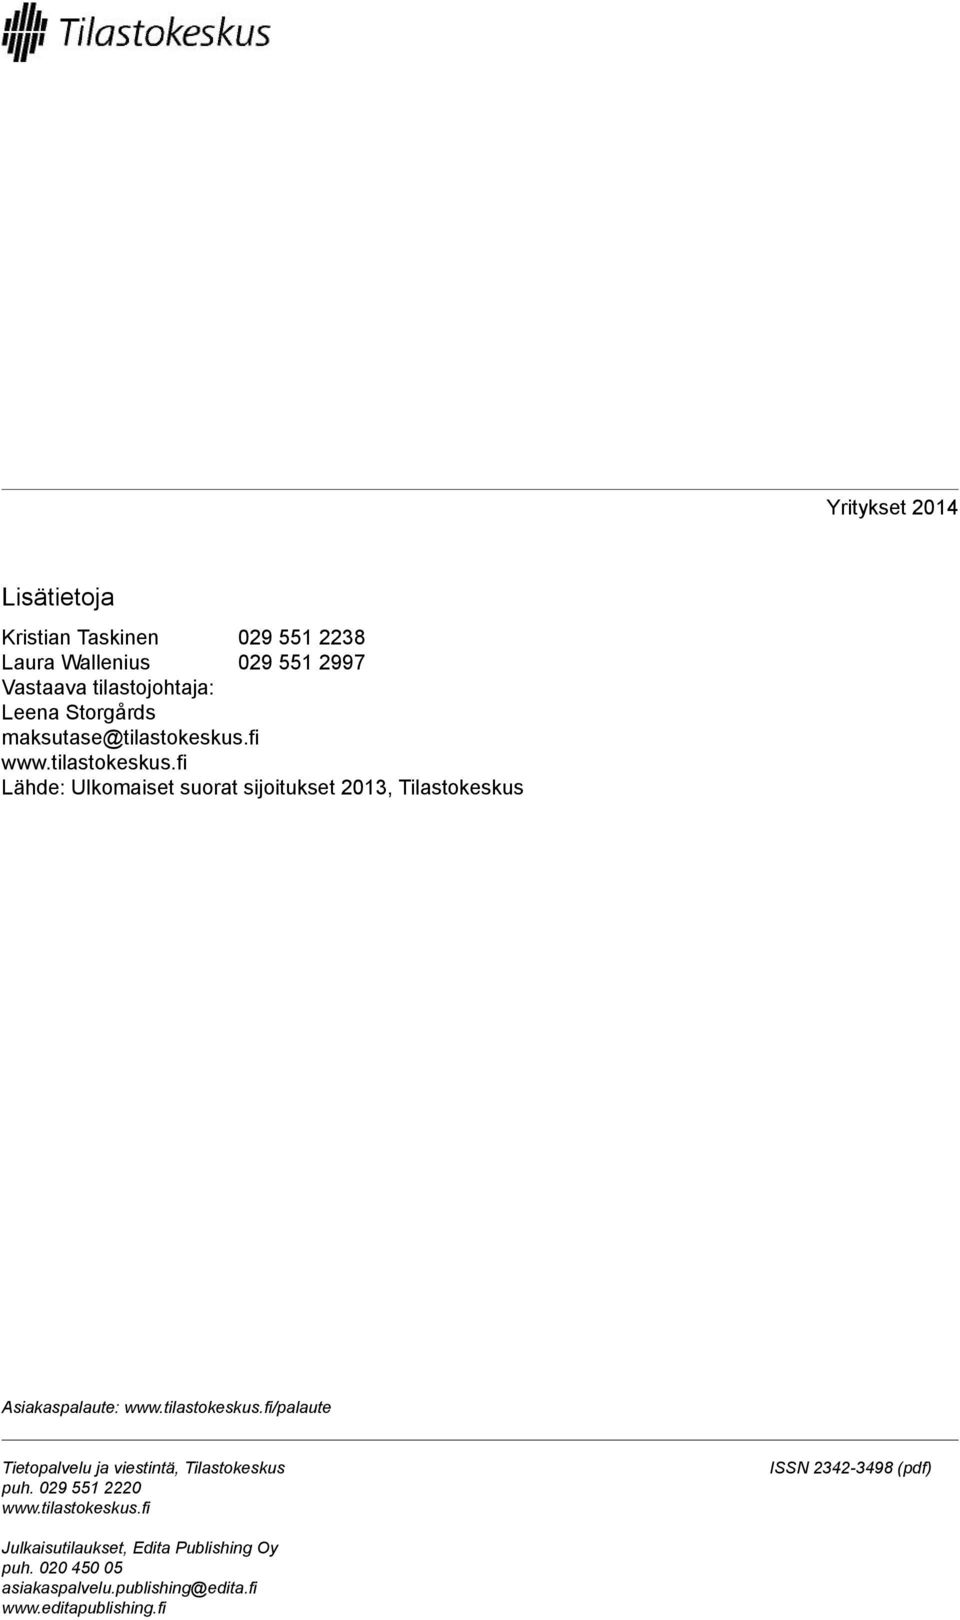 tilastokeskus.fi/palaute Tietopalvelu ja viestintä, Tilastokeskus puh. 029 551 2220 www.tilastokeskus.fi ISSN 2342-3498 (pdf) Julkaisutilaukset, Edita Publishing Oy puh.